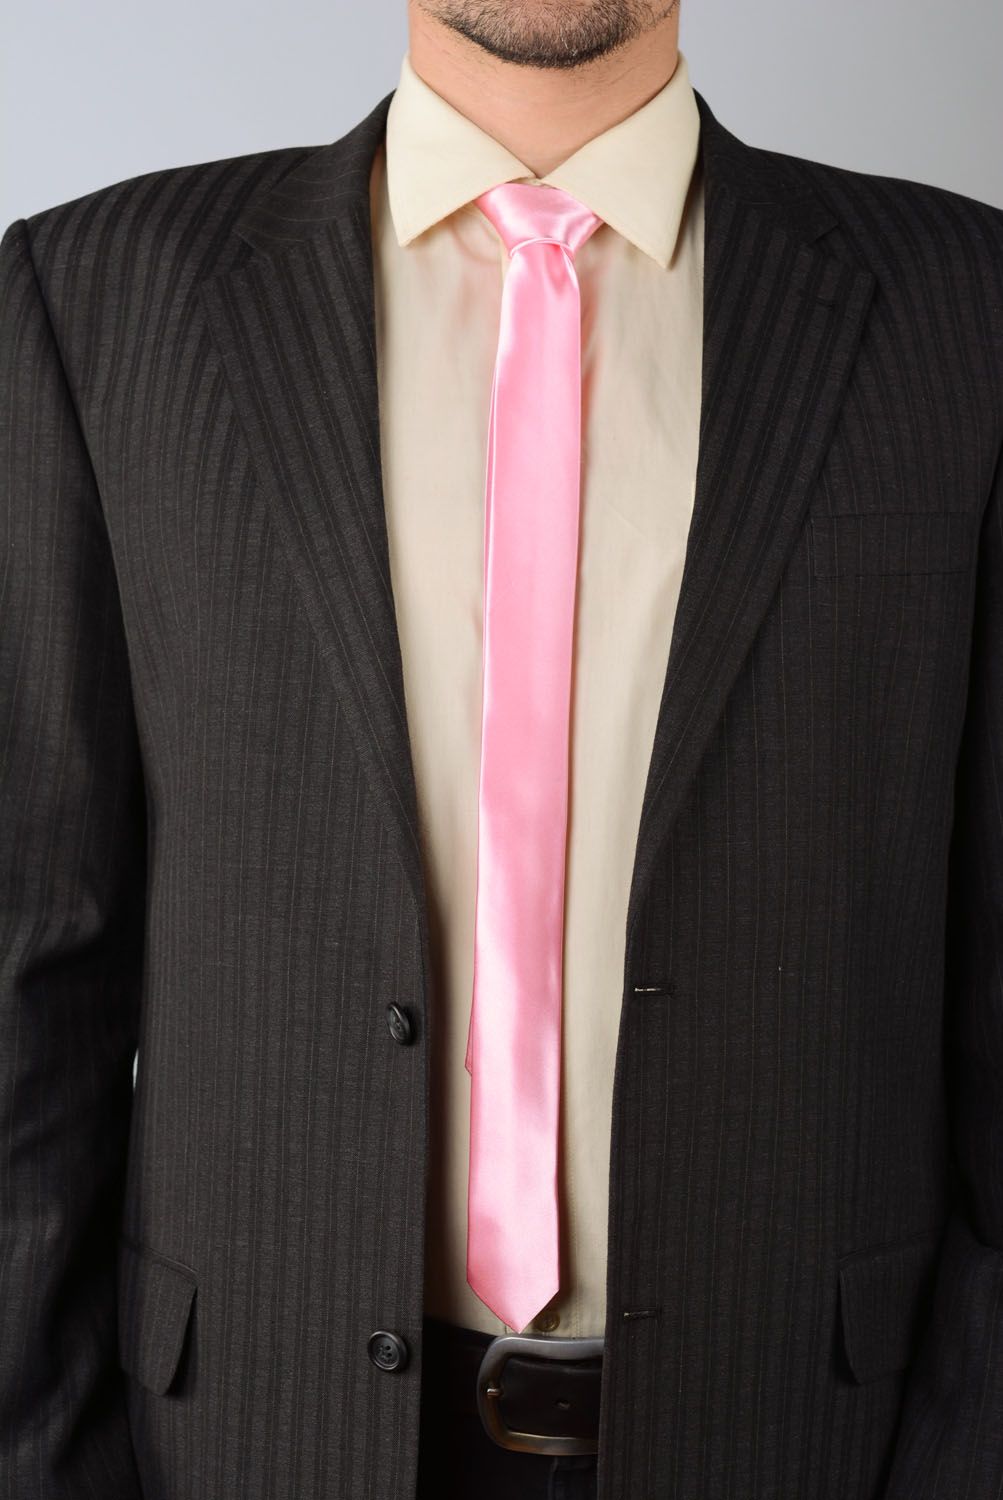 Corbata de raso rosada foto 1